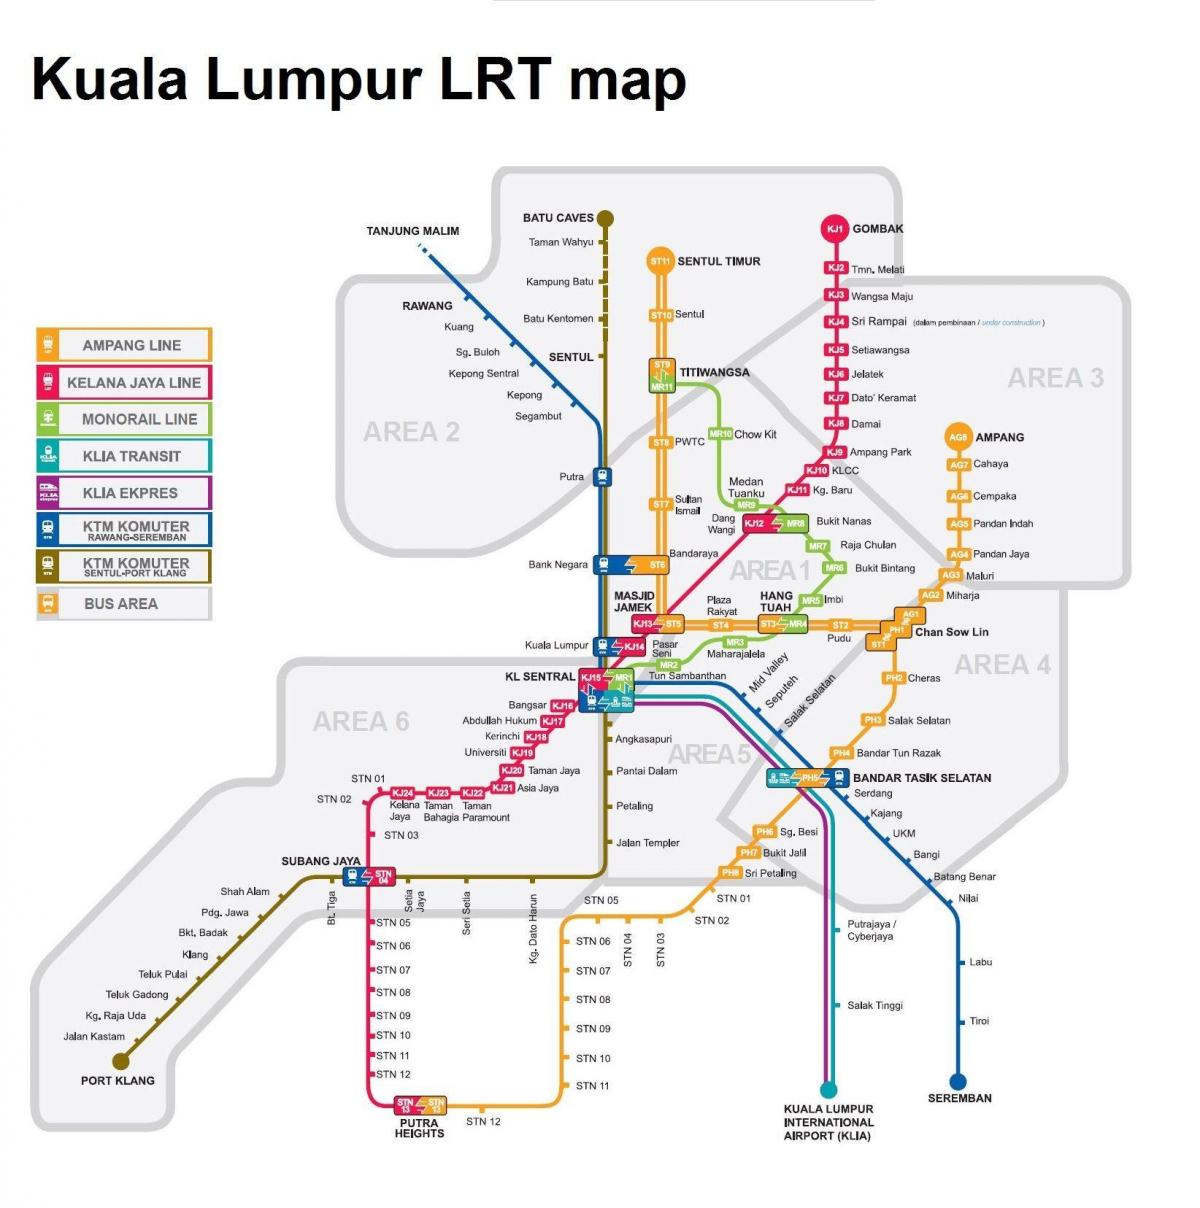 lrt mapa ng malaysia 2016